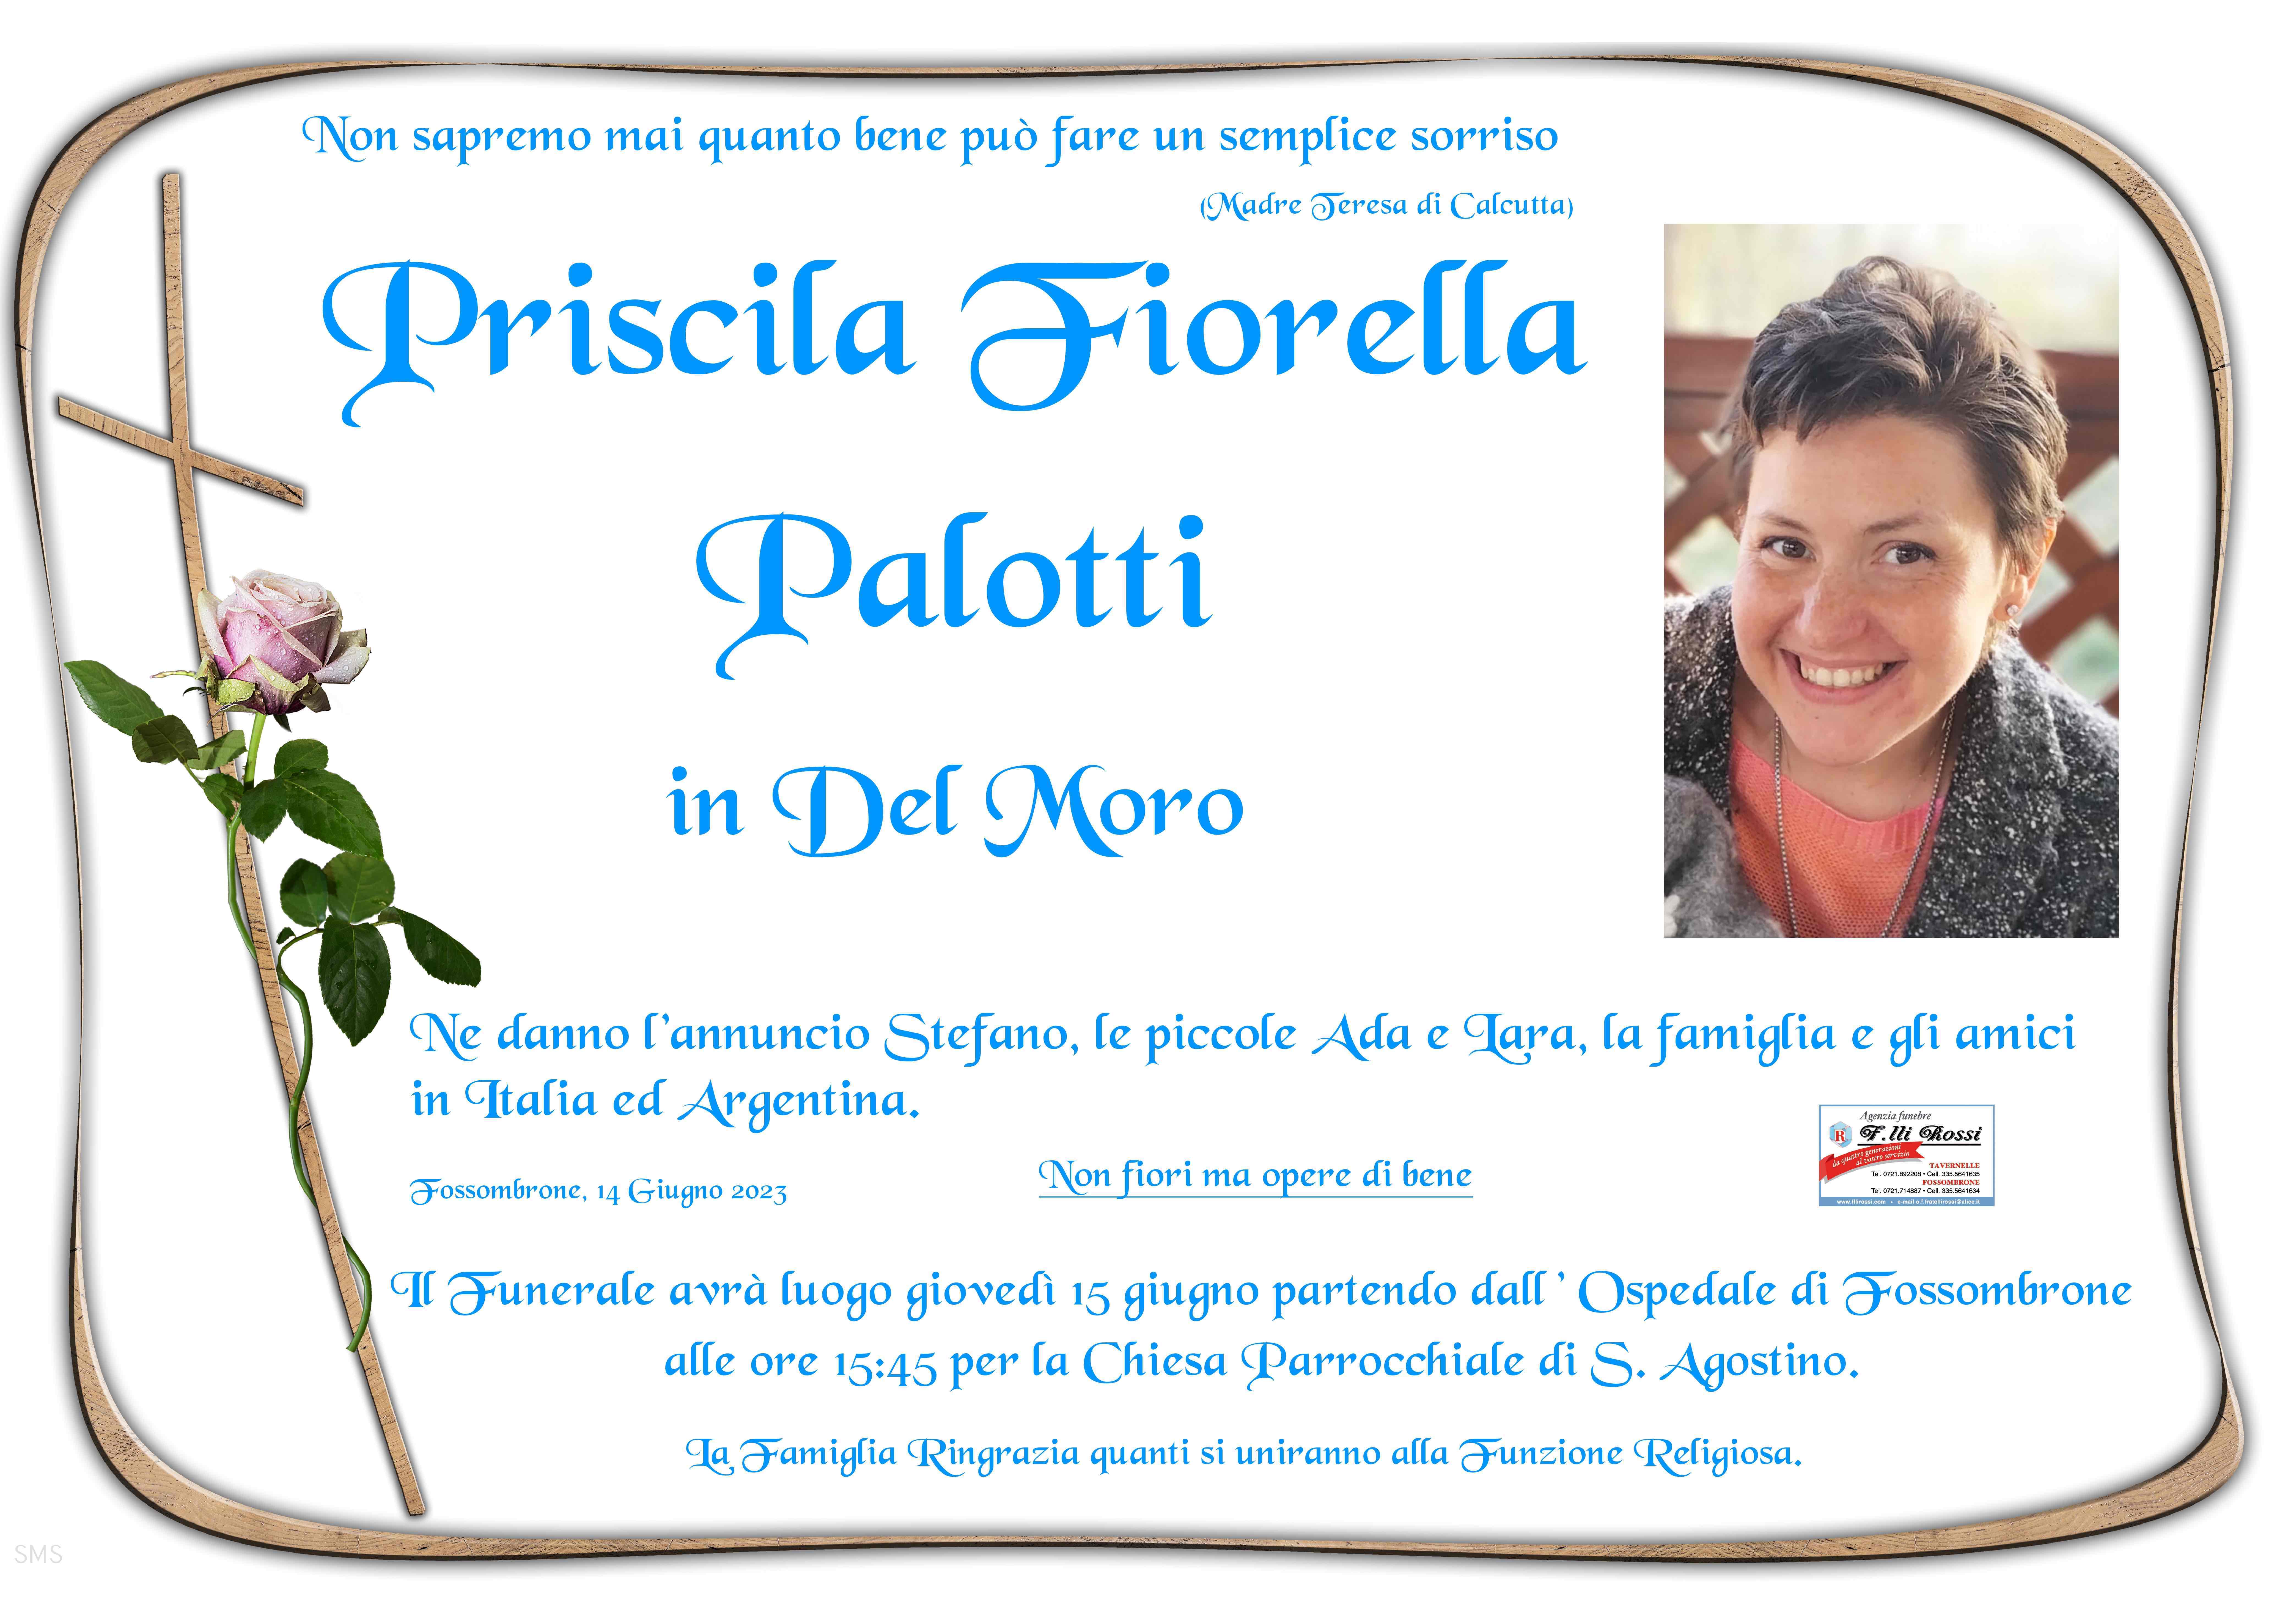 Priscila Fiorella Palotti